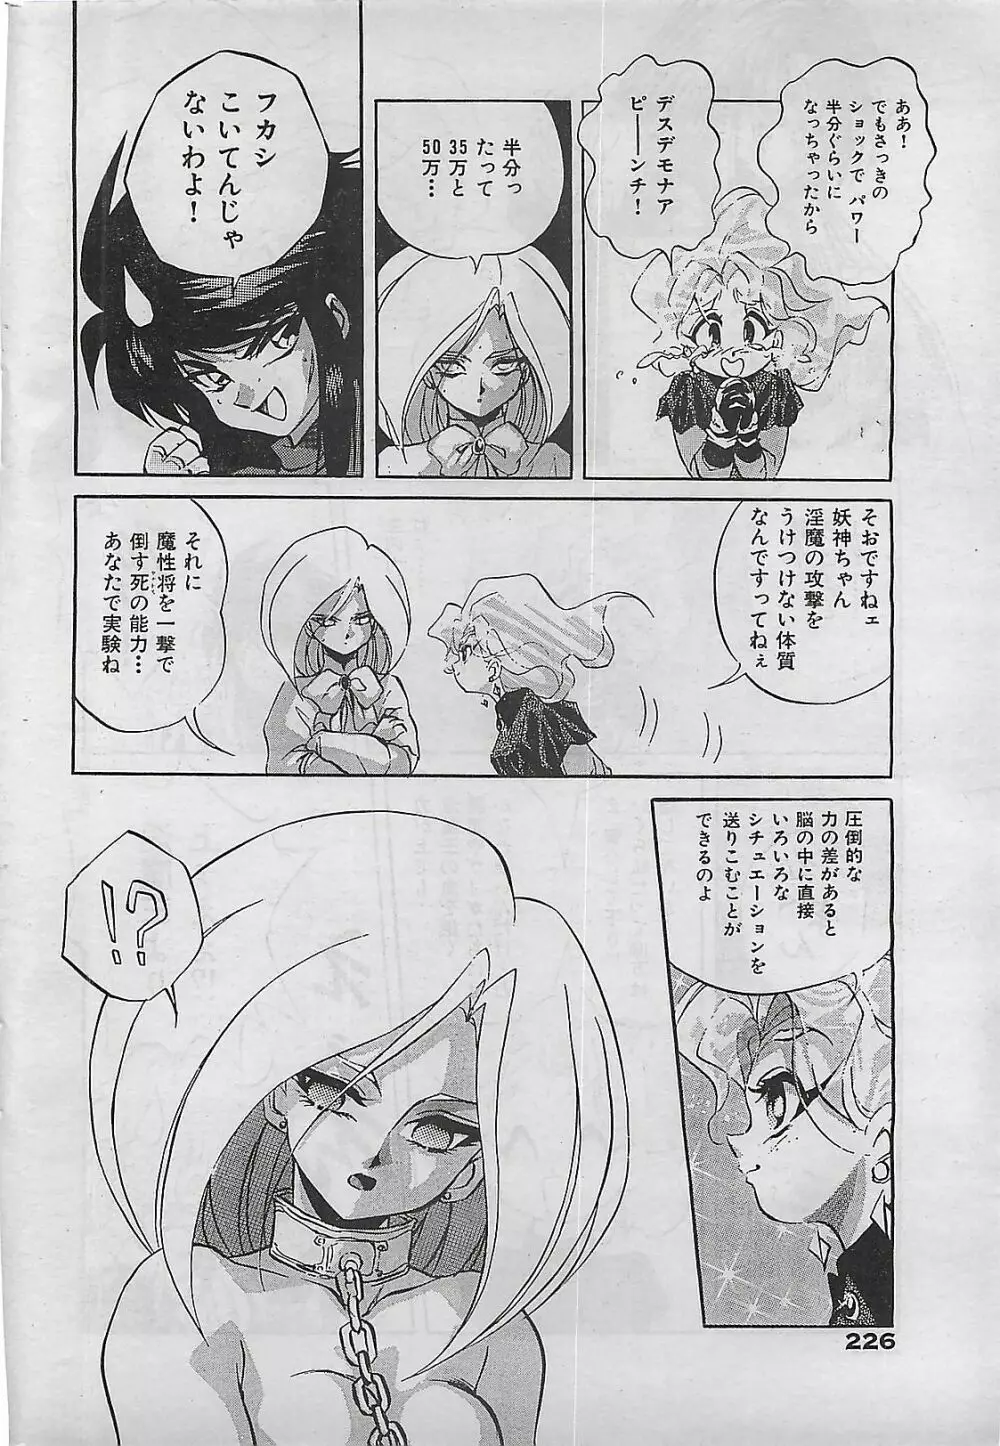 COMIC ゆみちゃん No.2 1995年08月号 226ページ